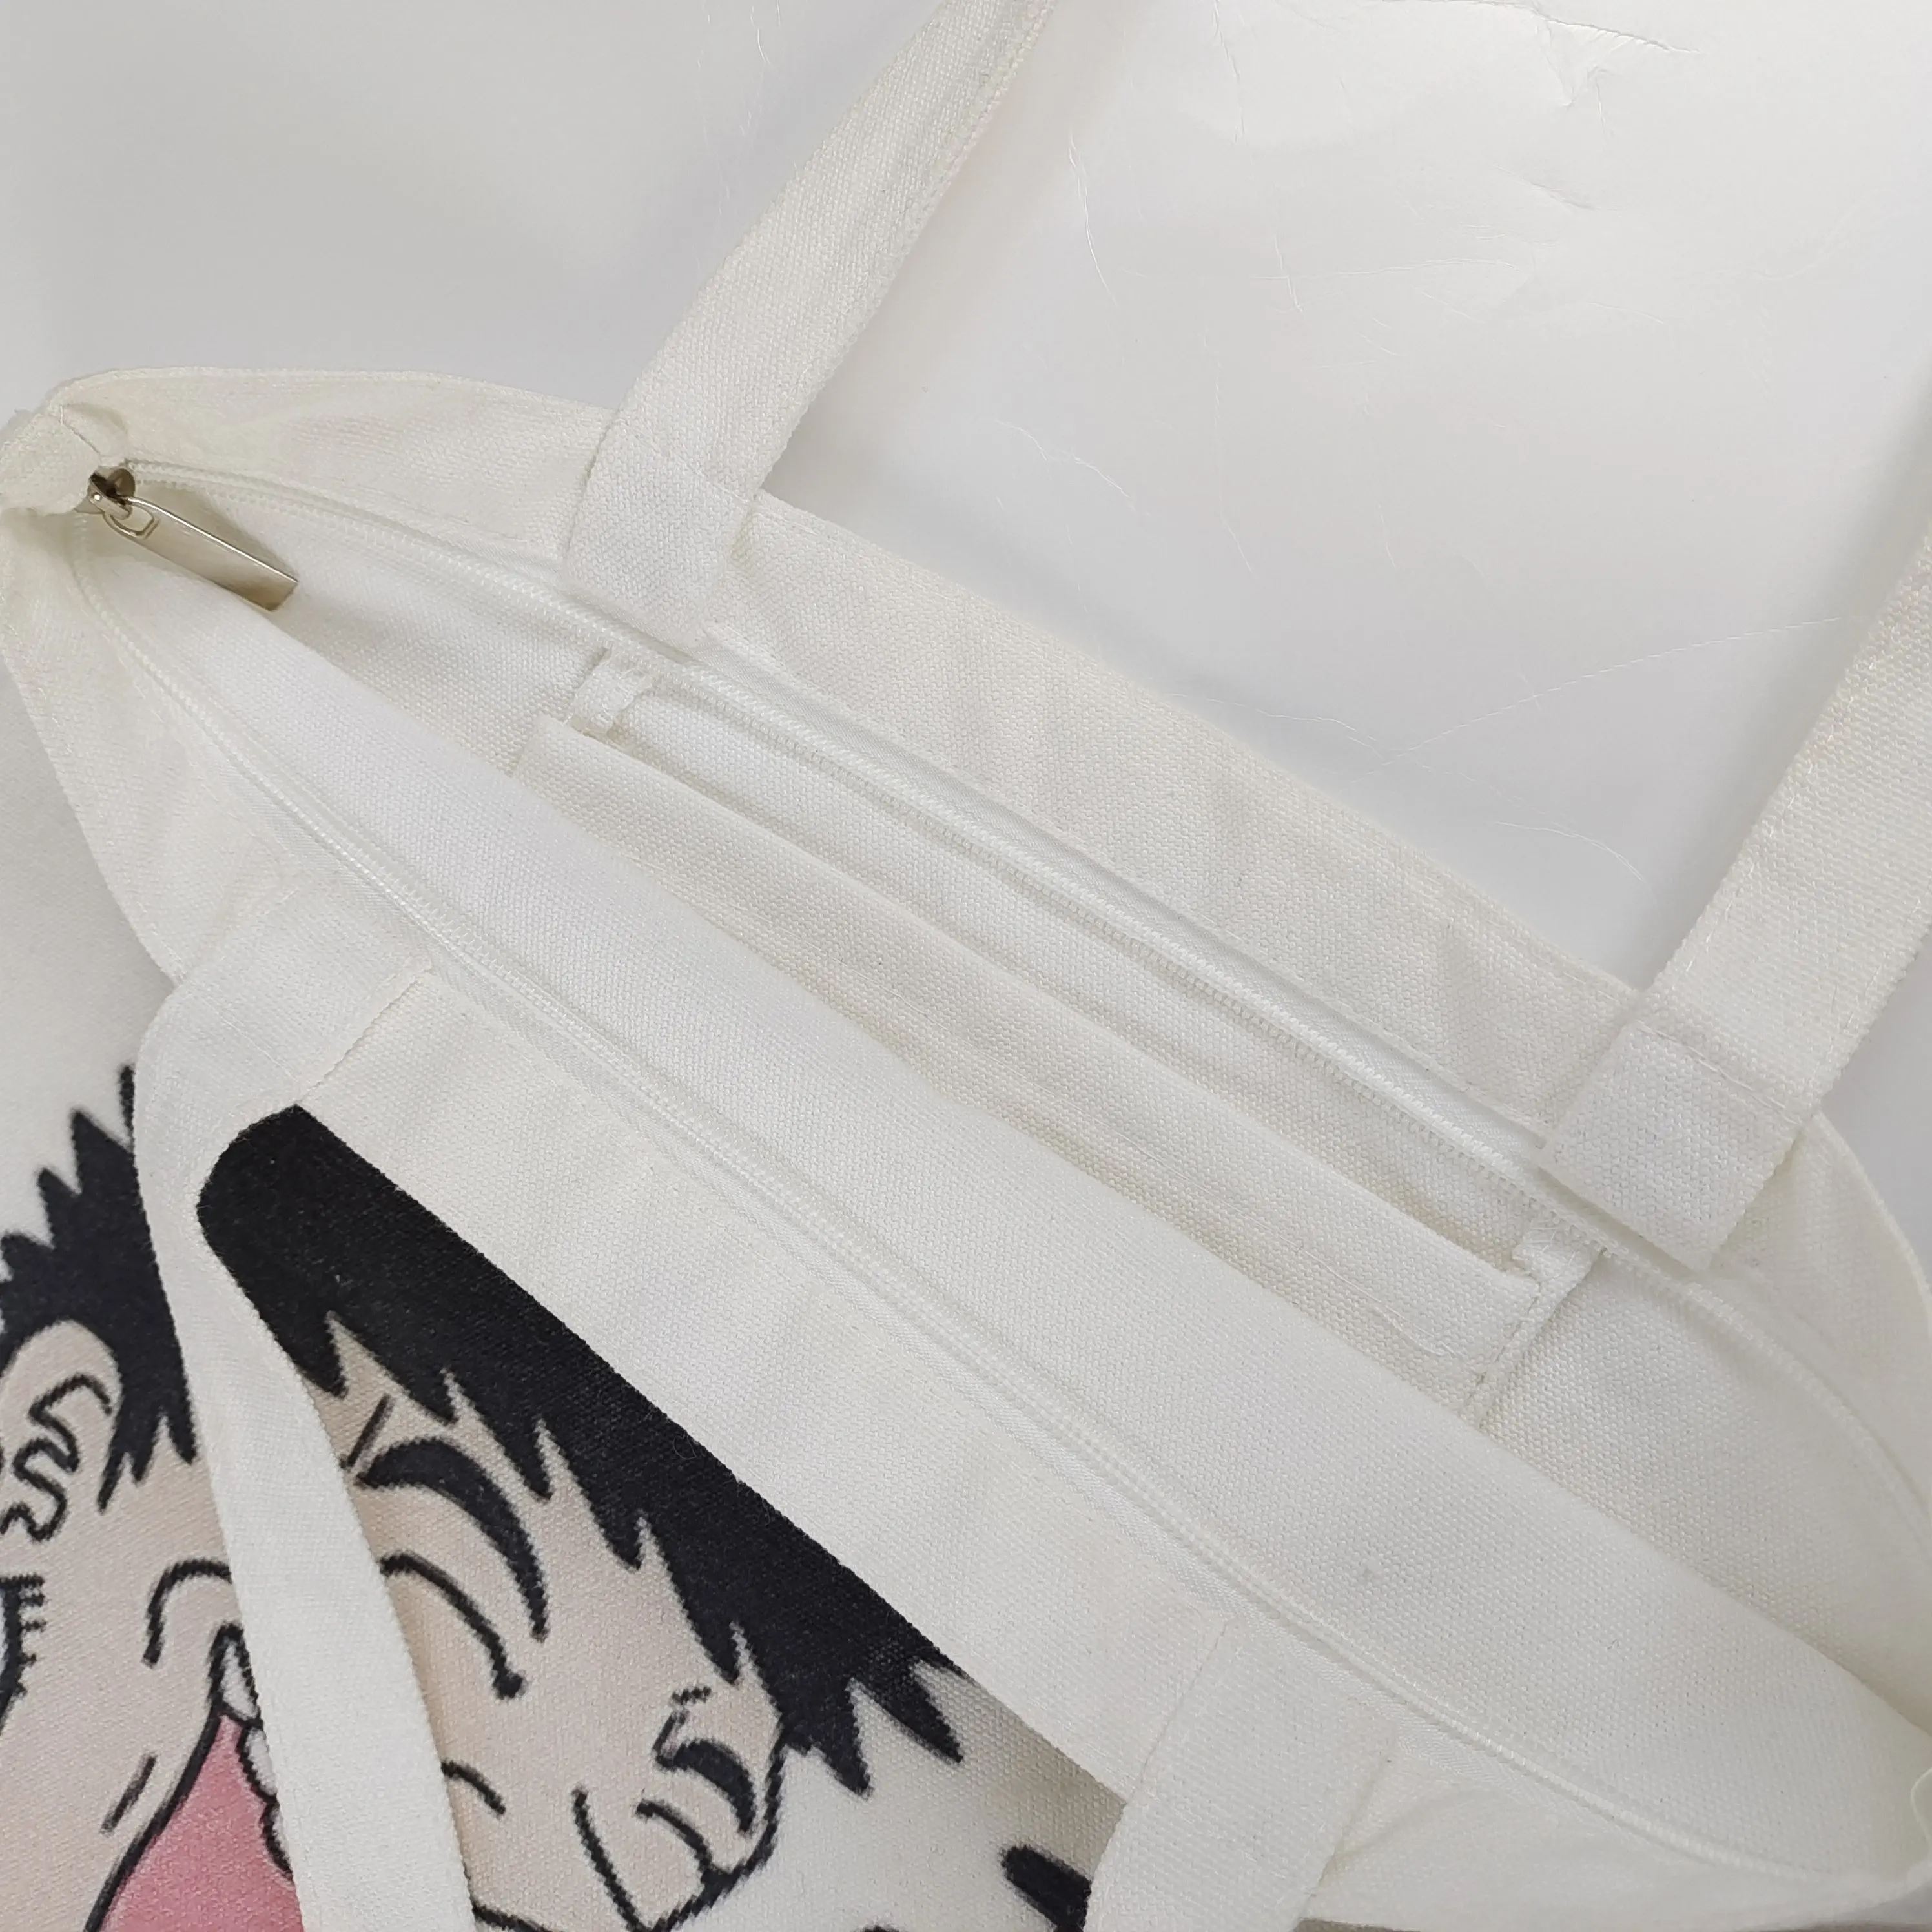 मेकअप शॉपिंग Duffle बैग छोटे लच्छेदार कैनवास बैग ले जाना कपास कैनवास कस्टम कैनवास कपड़े बैग के साथ कस्टम मुद्रित लोगो